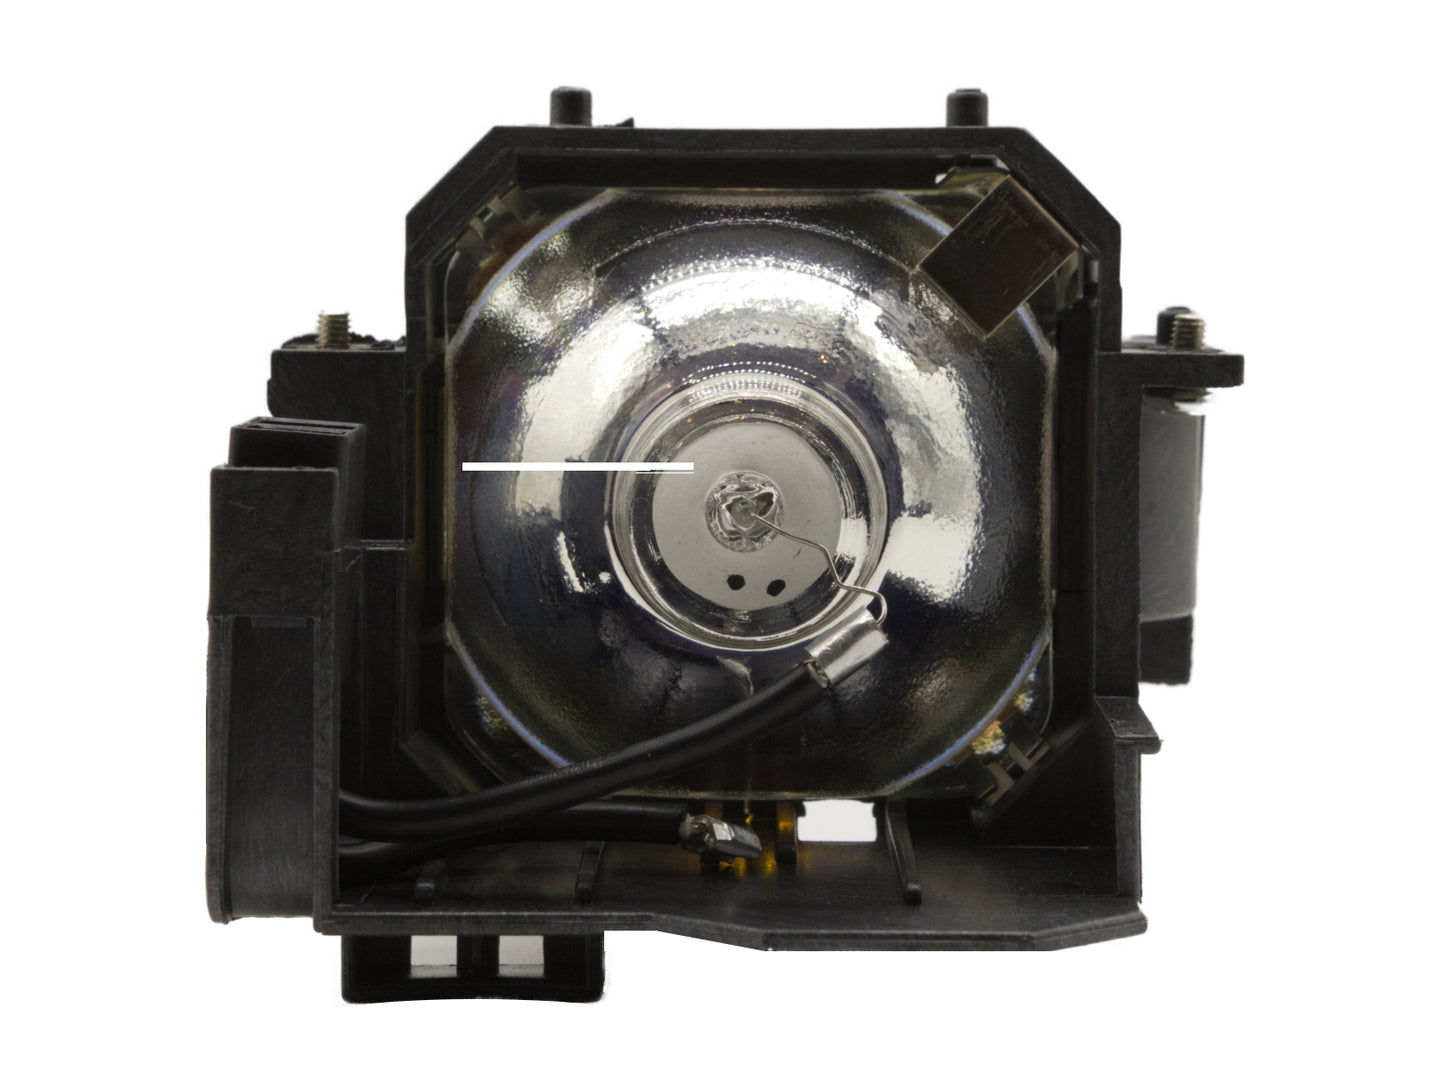 codalux lampada proiettore per EPSON ELPLP42, V13H010L42, OSRAM bulbo con custodia - Bild 5